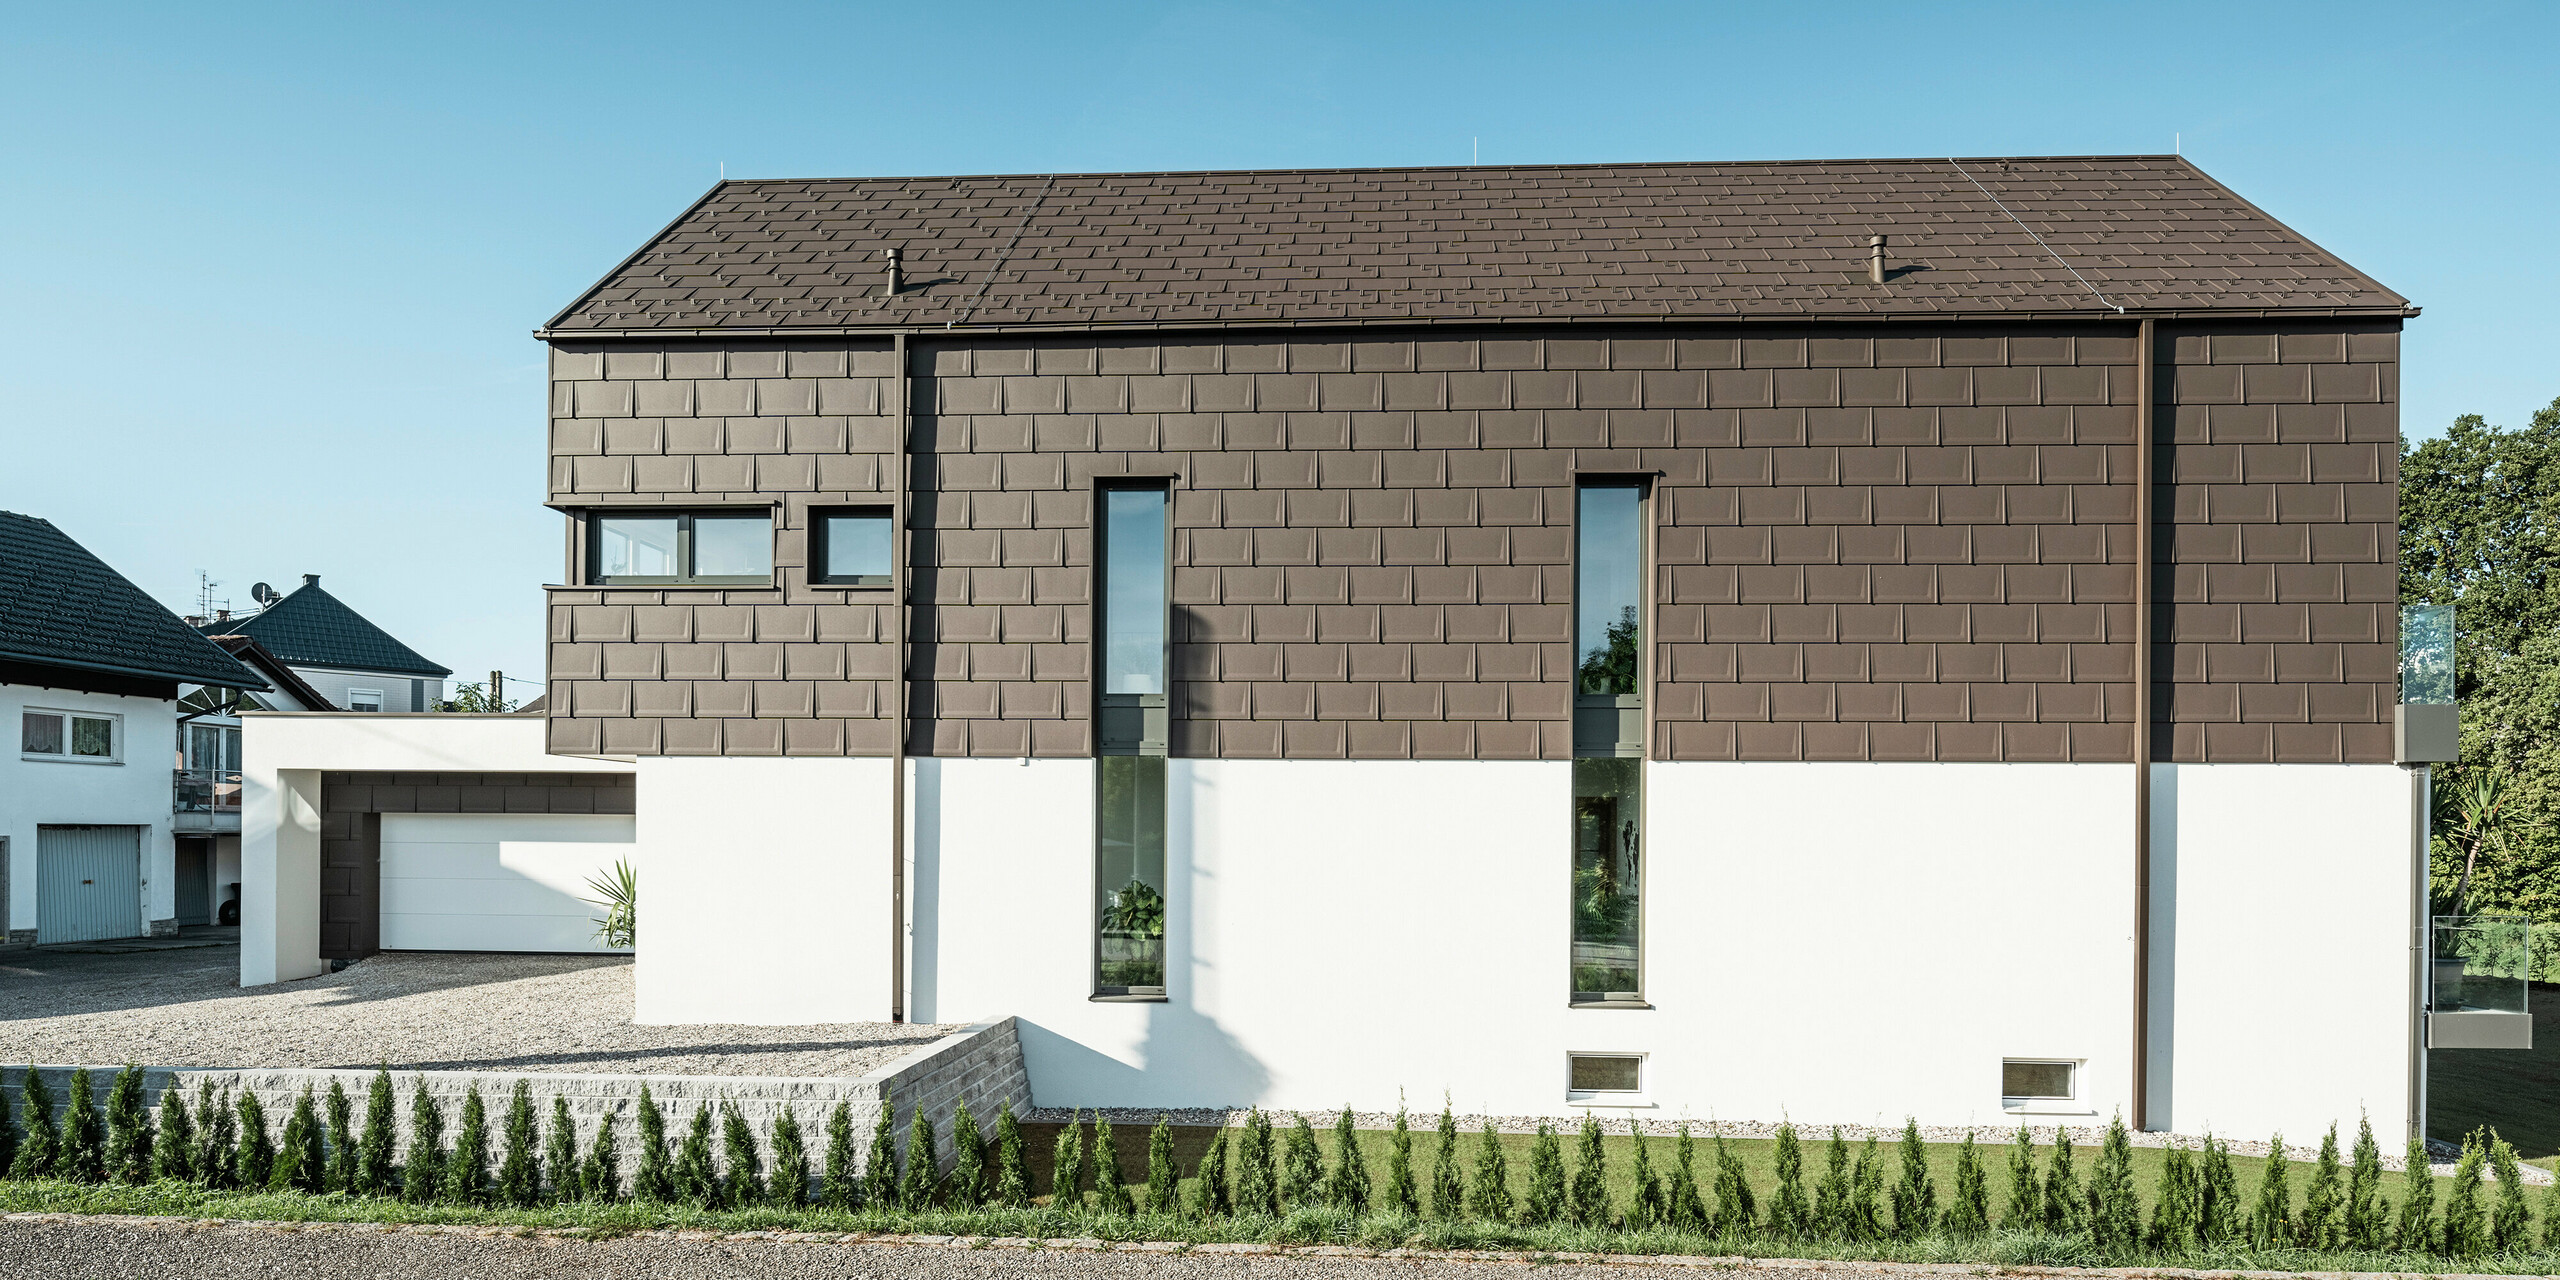 Boční pohled na rodinný dům v Neukirchenu v Rakousku se střešními panely PREFA R.16 v P.10 hnědé na střeše a na fasádě horního patra. Boční strana domu je vybavena vertikálními okny, která probíhají přes obě podlaží a zvýrazňují moderní designové pojetí domu. Jednotná struktura a jednotný barevný koncept střešních panelů R.16 nabízí výrazný vzhled. Střešní odvodňovací systém PREFA v podobě čtvercového tubusu a boxového okapu je rovněž v barvě P.10 hnědá, což umožňuje bezproblémové začlenění do současné architektury. Bílá omítková fasáda, která zdobí přízemí a garáž, dotváří harmonický celkový obraz. Mimořádnou stavbu rámují mladé cypřiše, které za pár let poskytnou soukromí kolem domu.